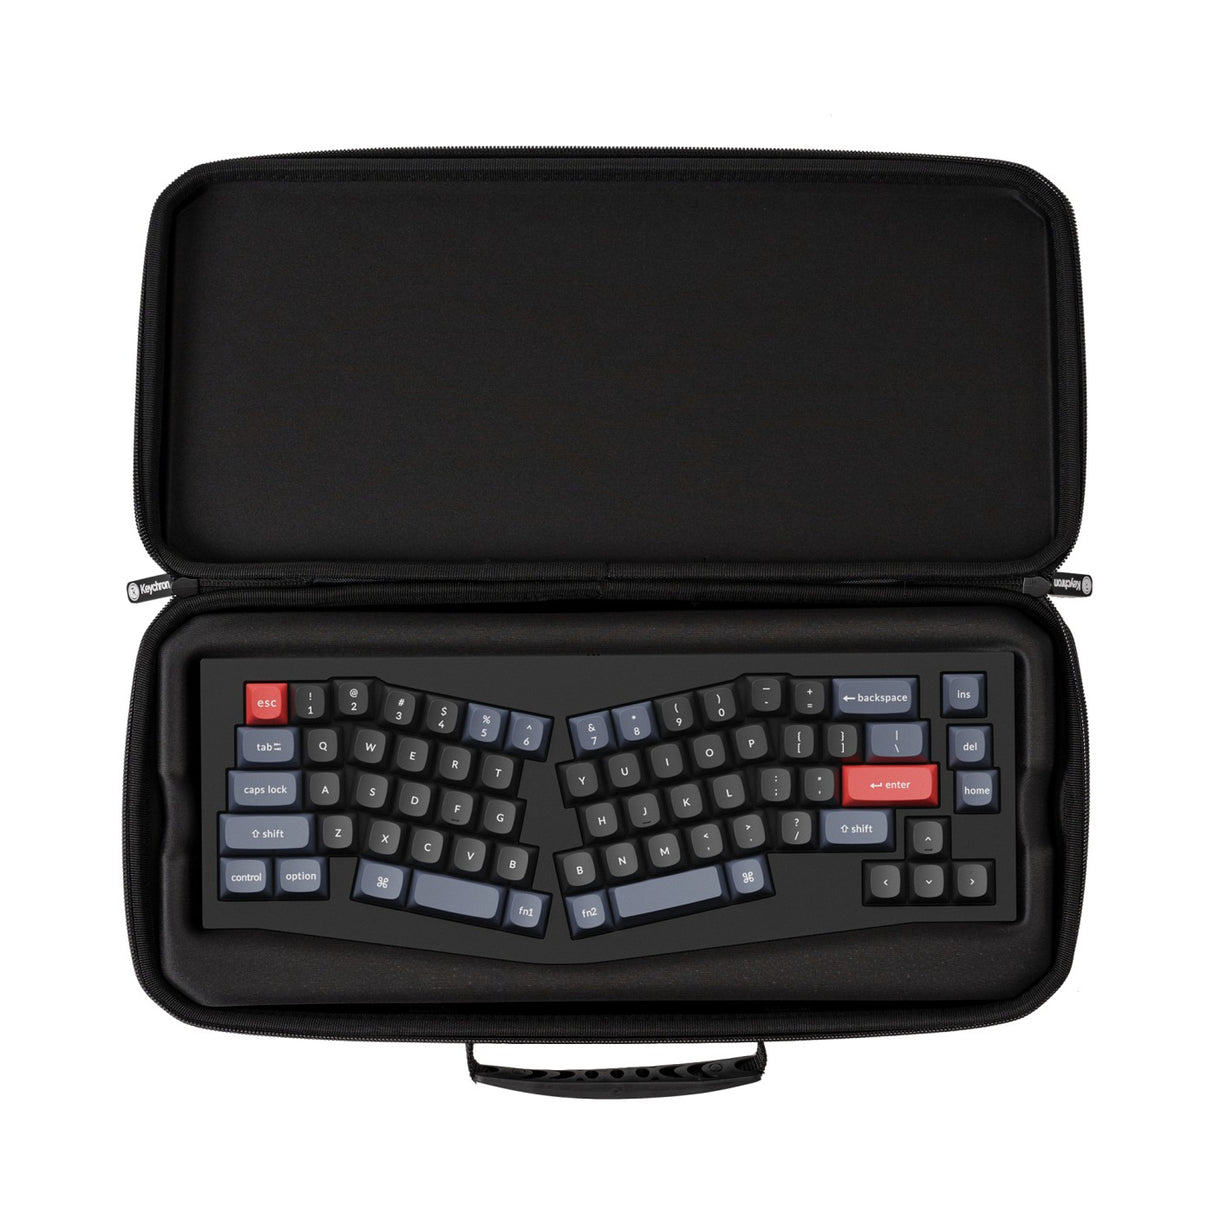 Keychron Q8 keyboard carrying case